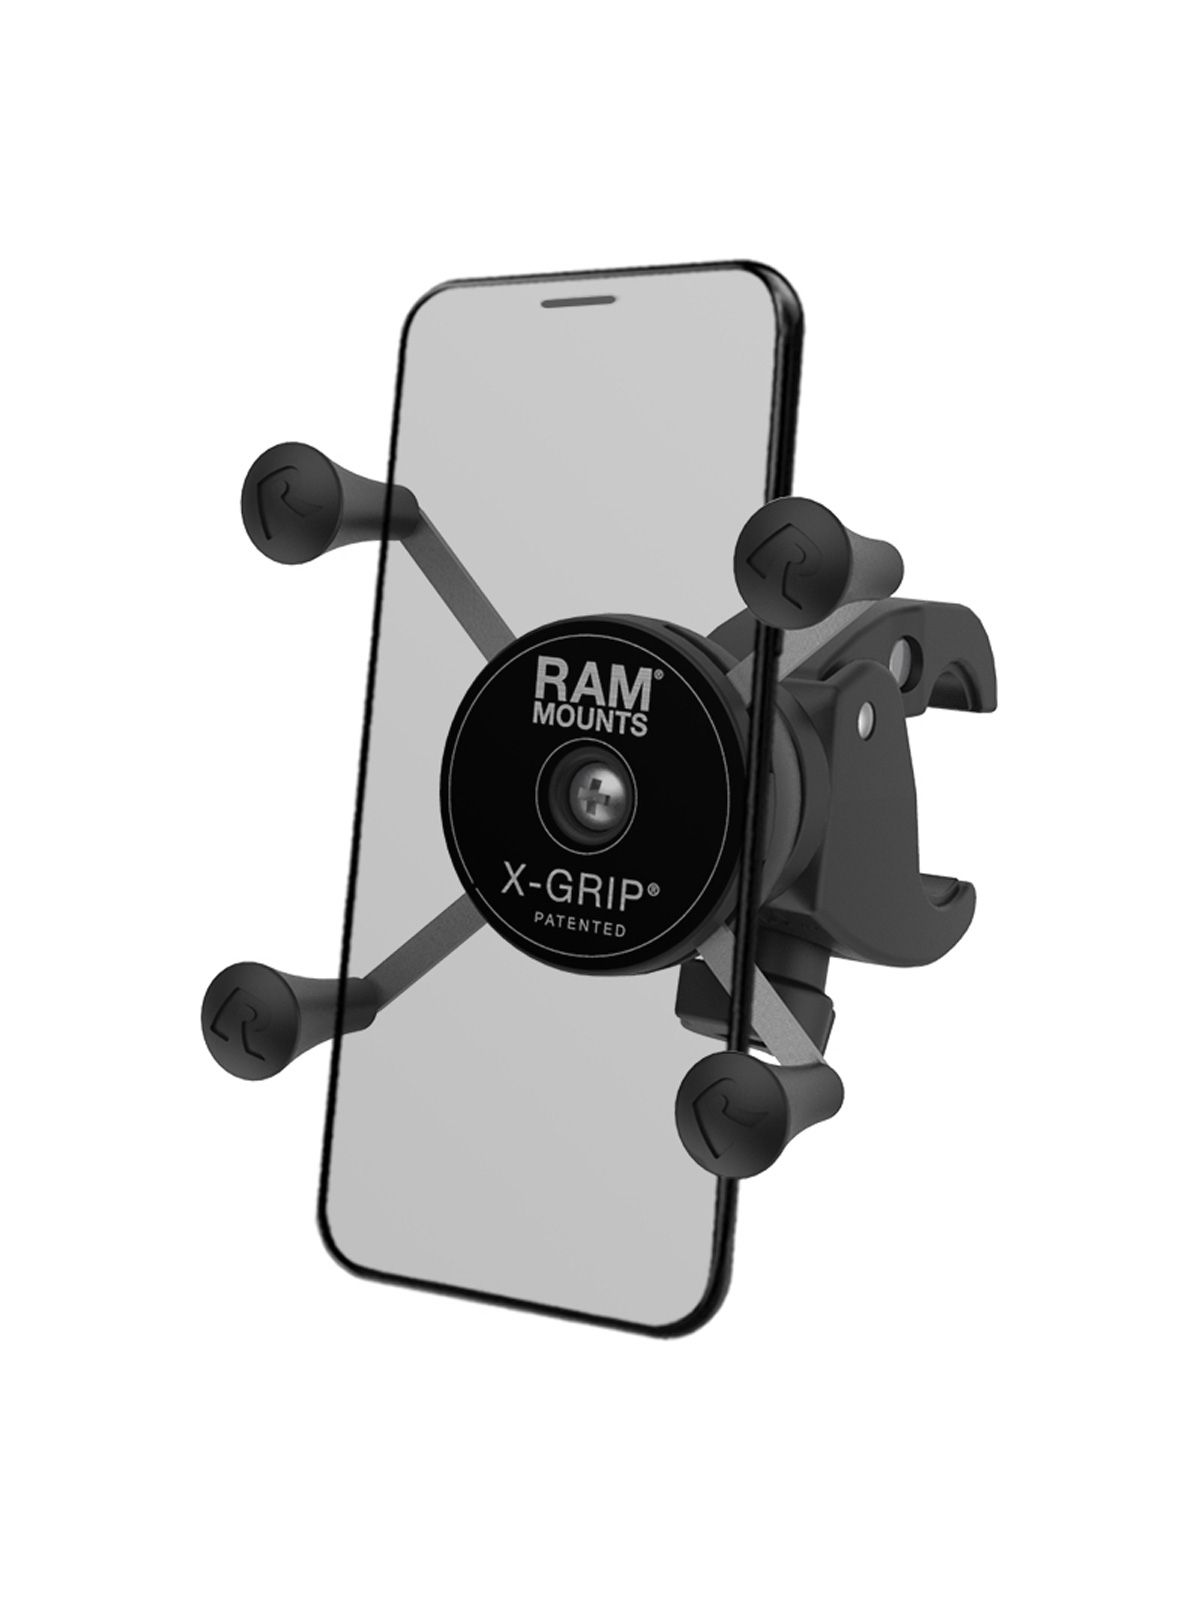 RAM Mounts X-Grip Halterung für Smartphones bis 82,6 mm Breite -  Tough-Claw klein (Durchmesser 15,9-29,0 mm), direkte X-Grip-Anbindung